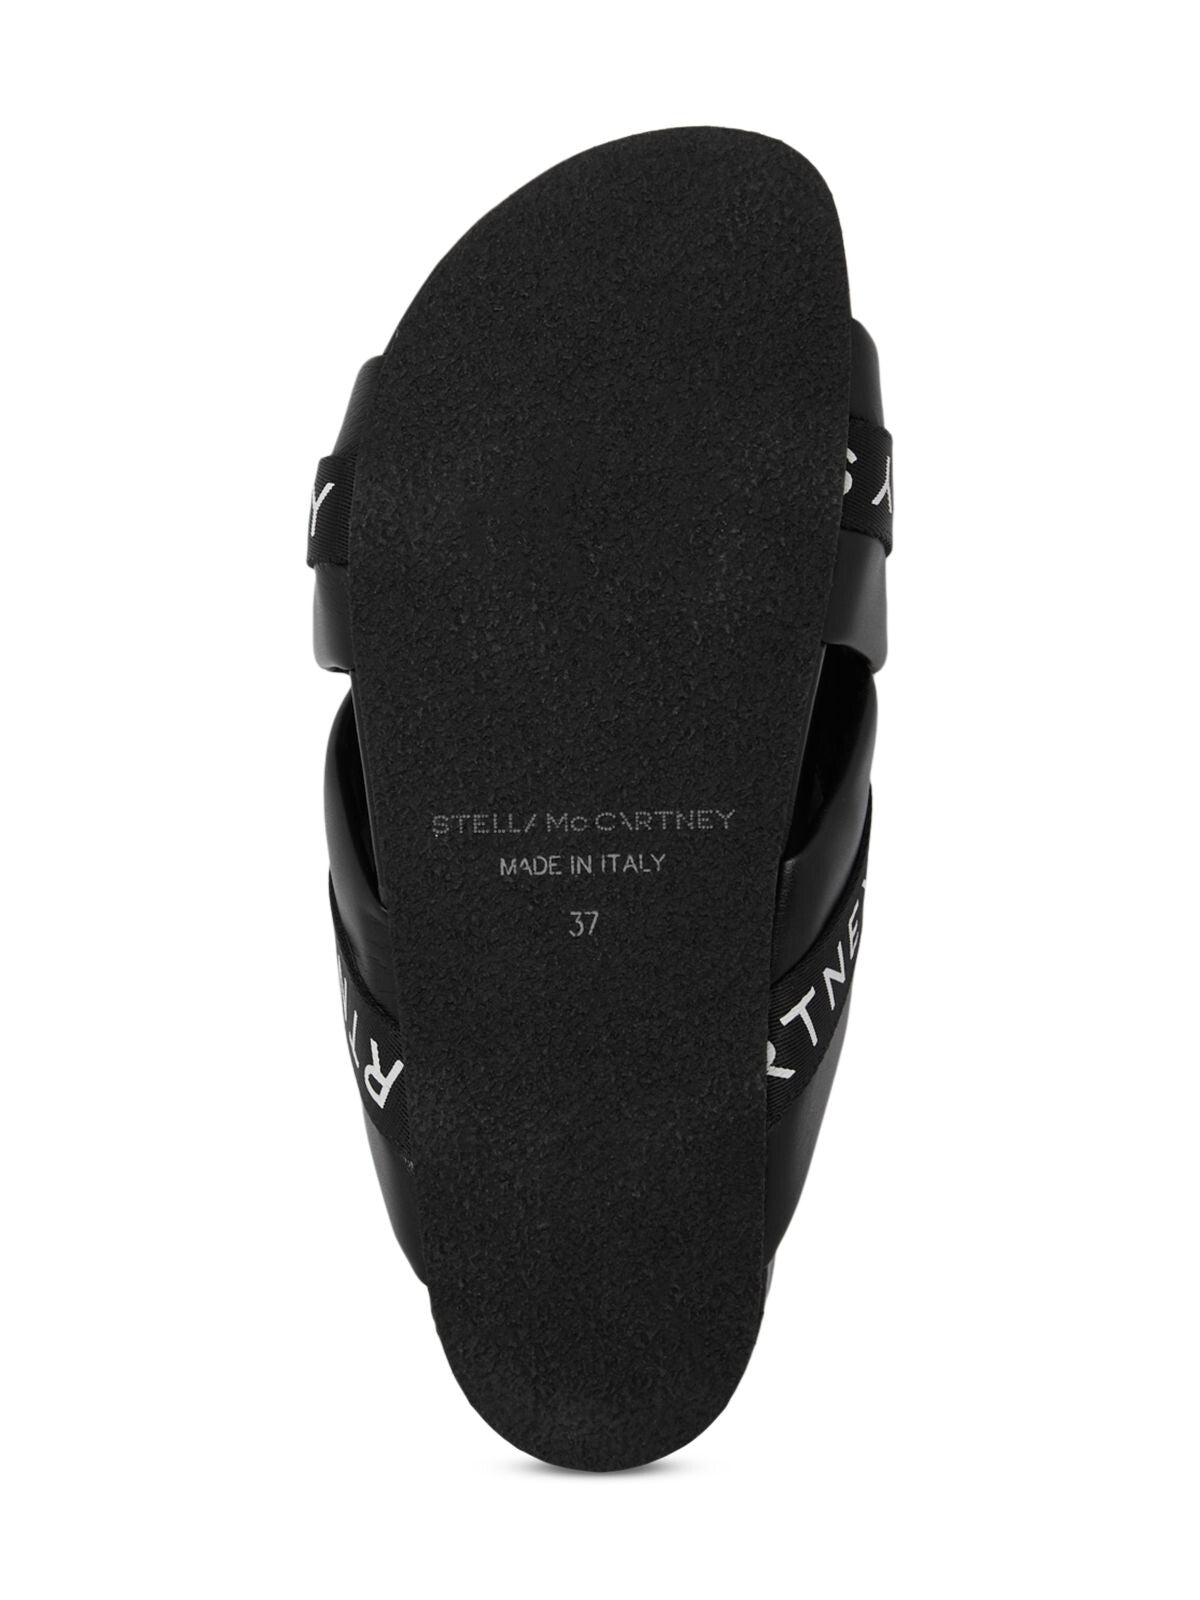 STELLAMCCARTNEY Womens Black Contoured Footbed Vesta Round Toe Platform Slip On Slide Sandals Shoes